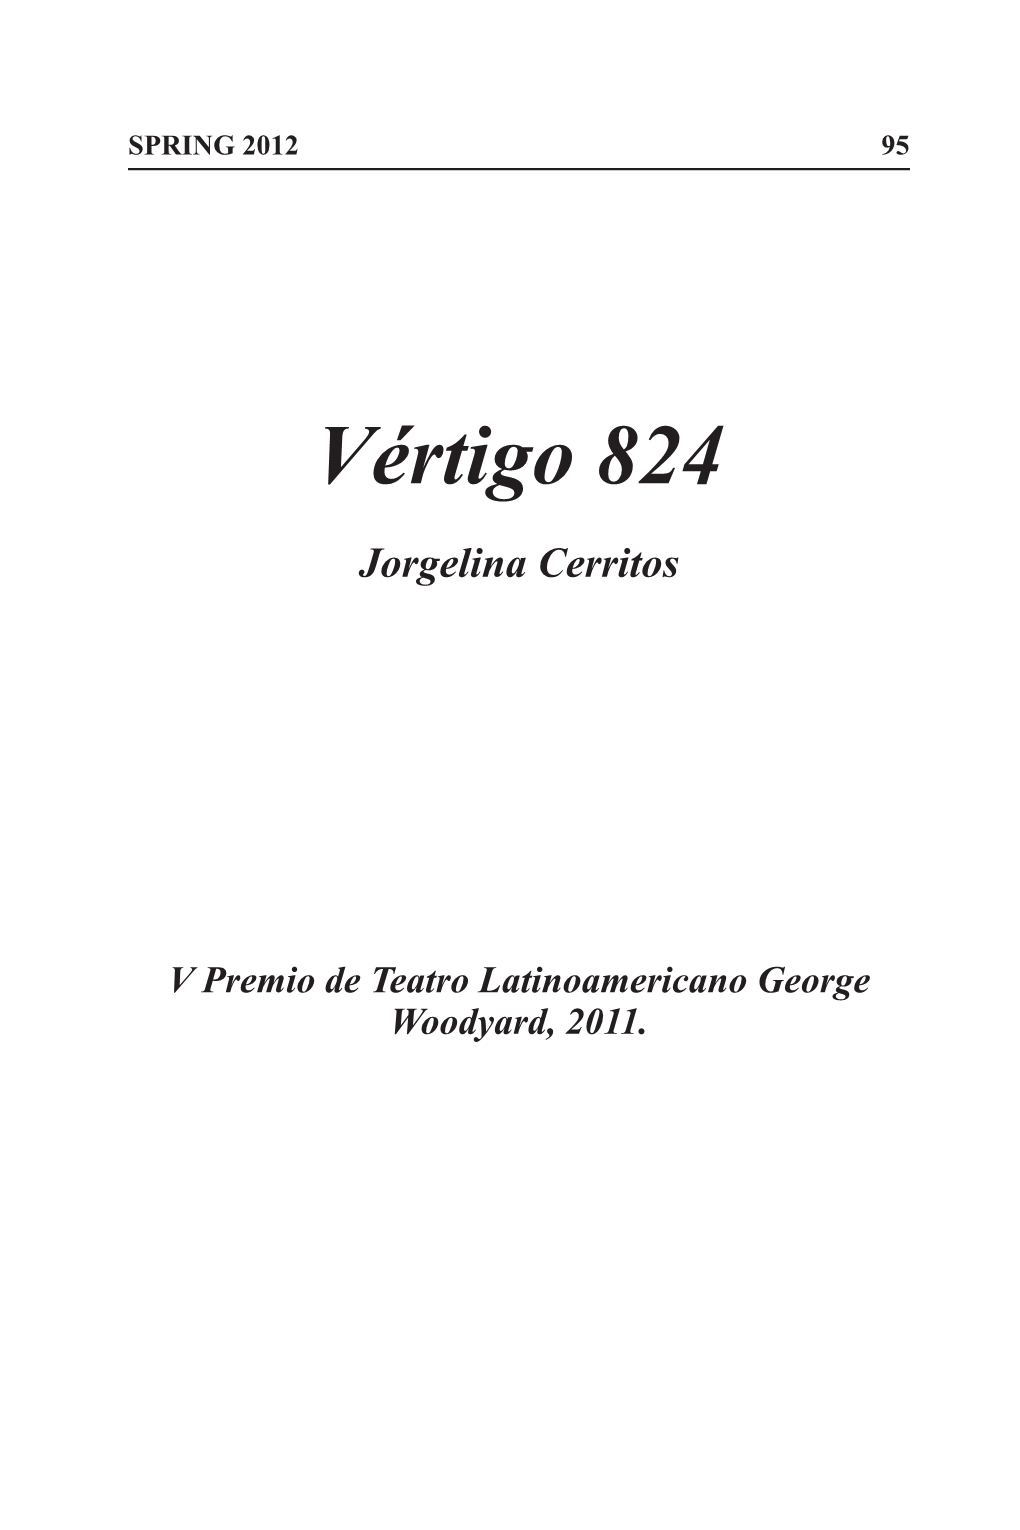 Vértigo 824 Jorgelina Cerritos